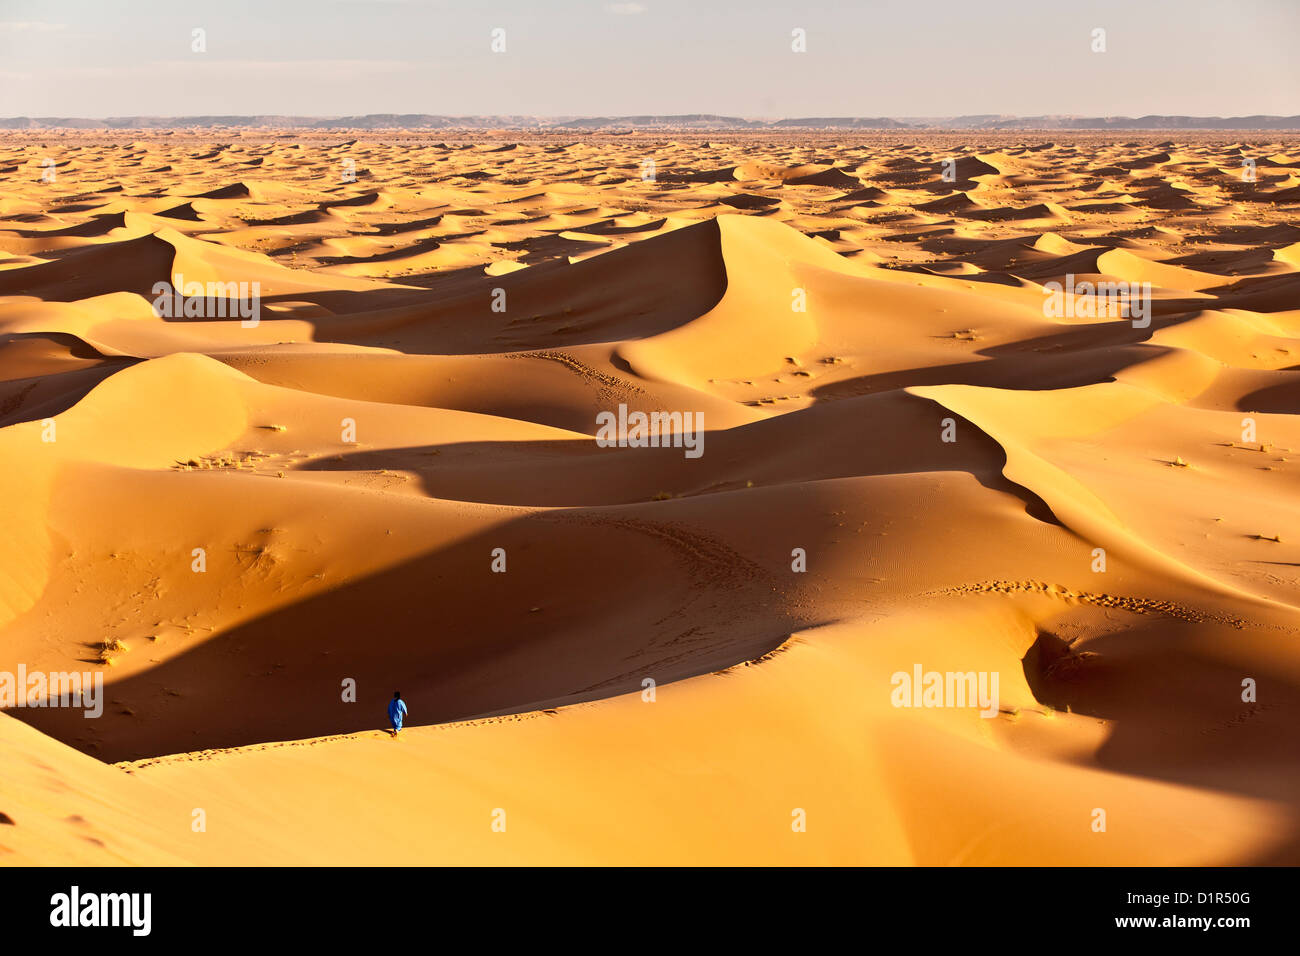 Il Marocco, M'Hamid, Erg Chigaga dune di sabbia. Deserto del Sahara. Local Berber uomo sulla duna di sabbia, sfondo tourist camp, bivacco. Foto Stock